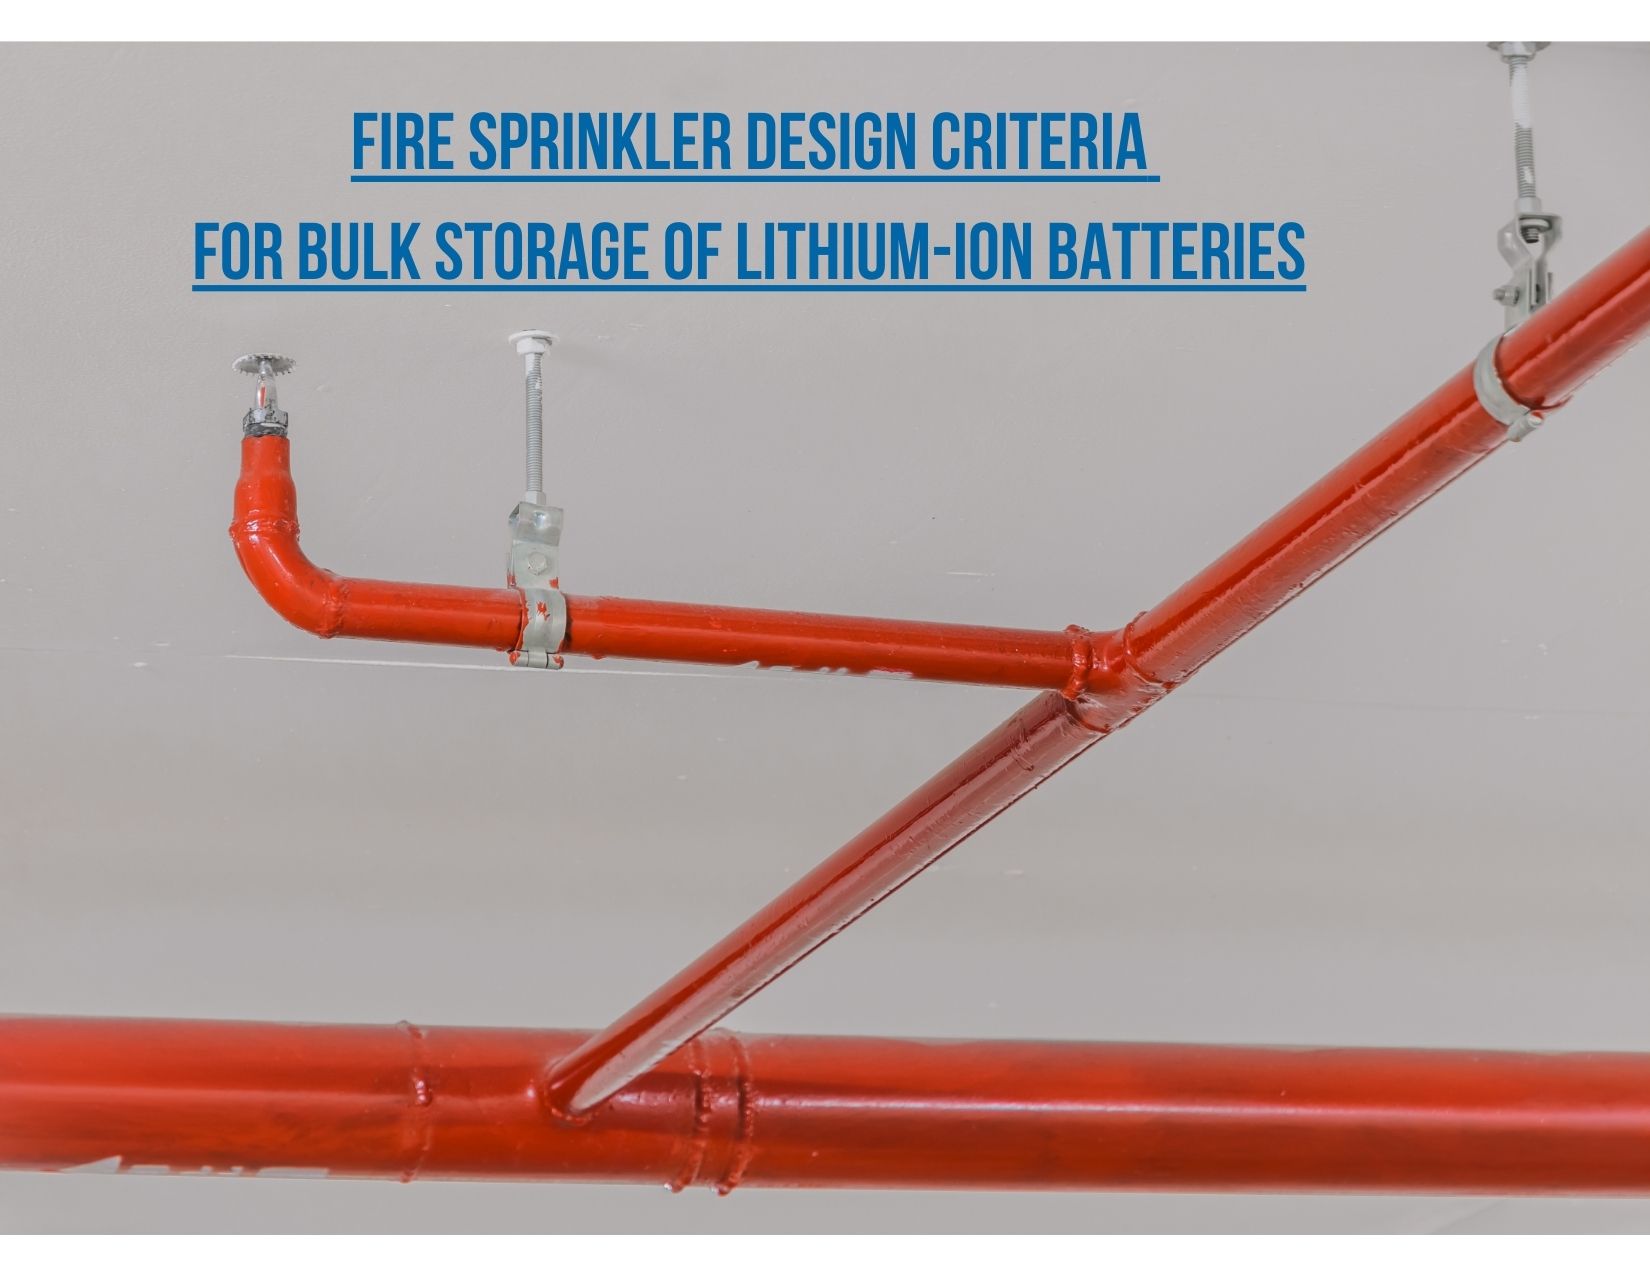 Criteria for Fire Sprinkler Design for Lithium-Ion Battery Bulk Storage